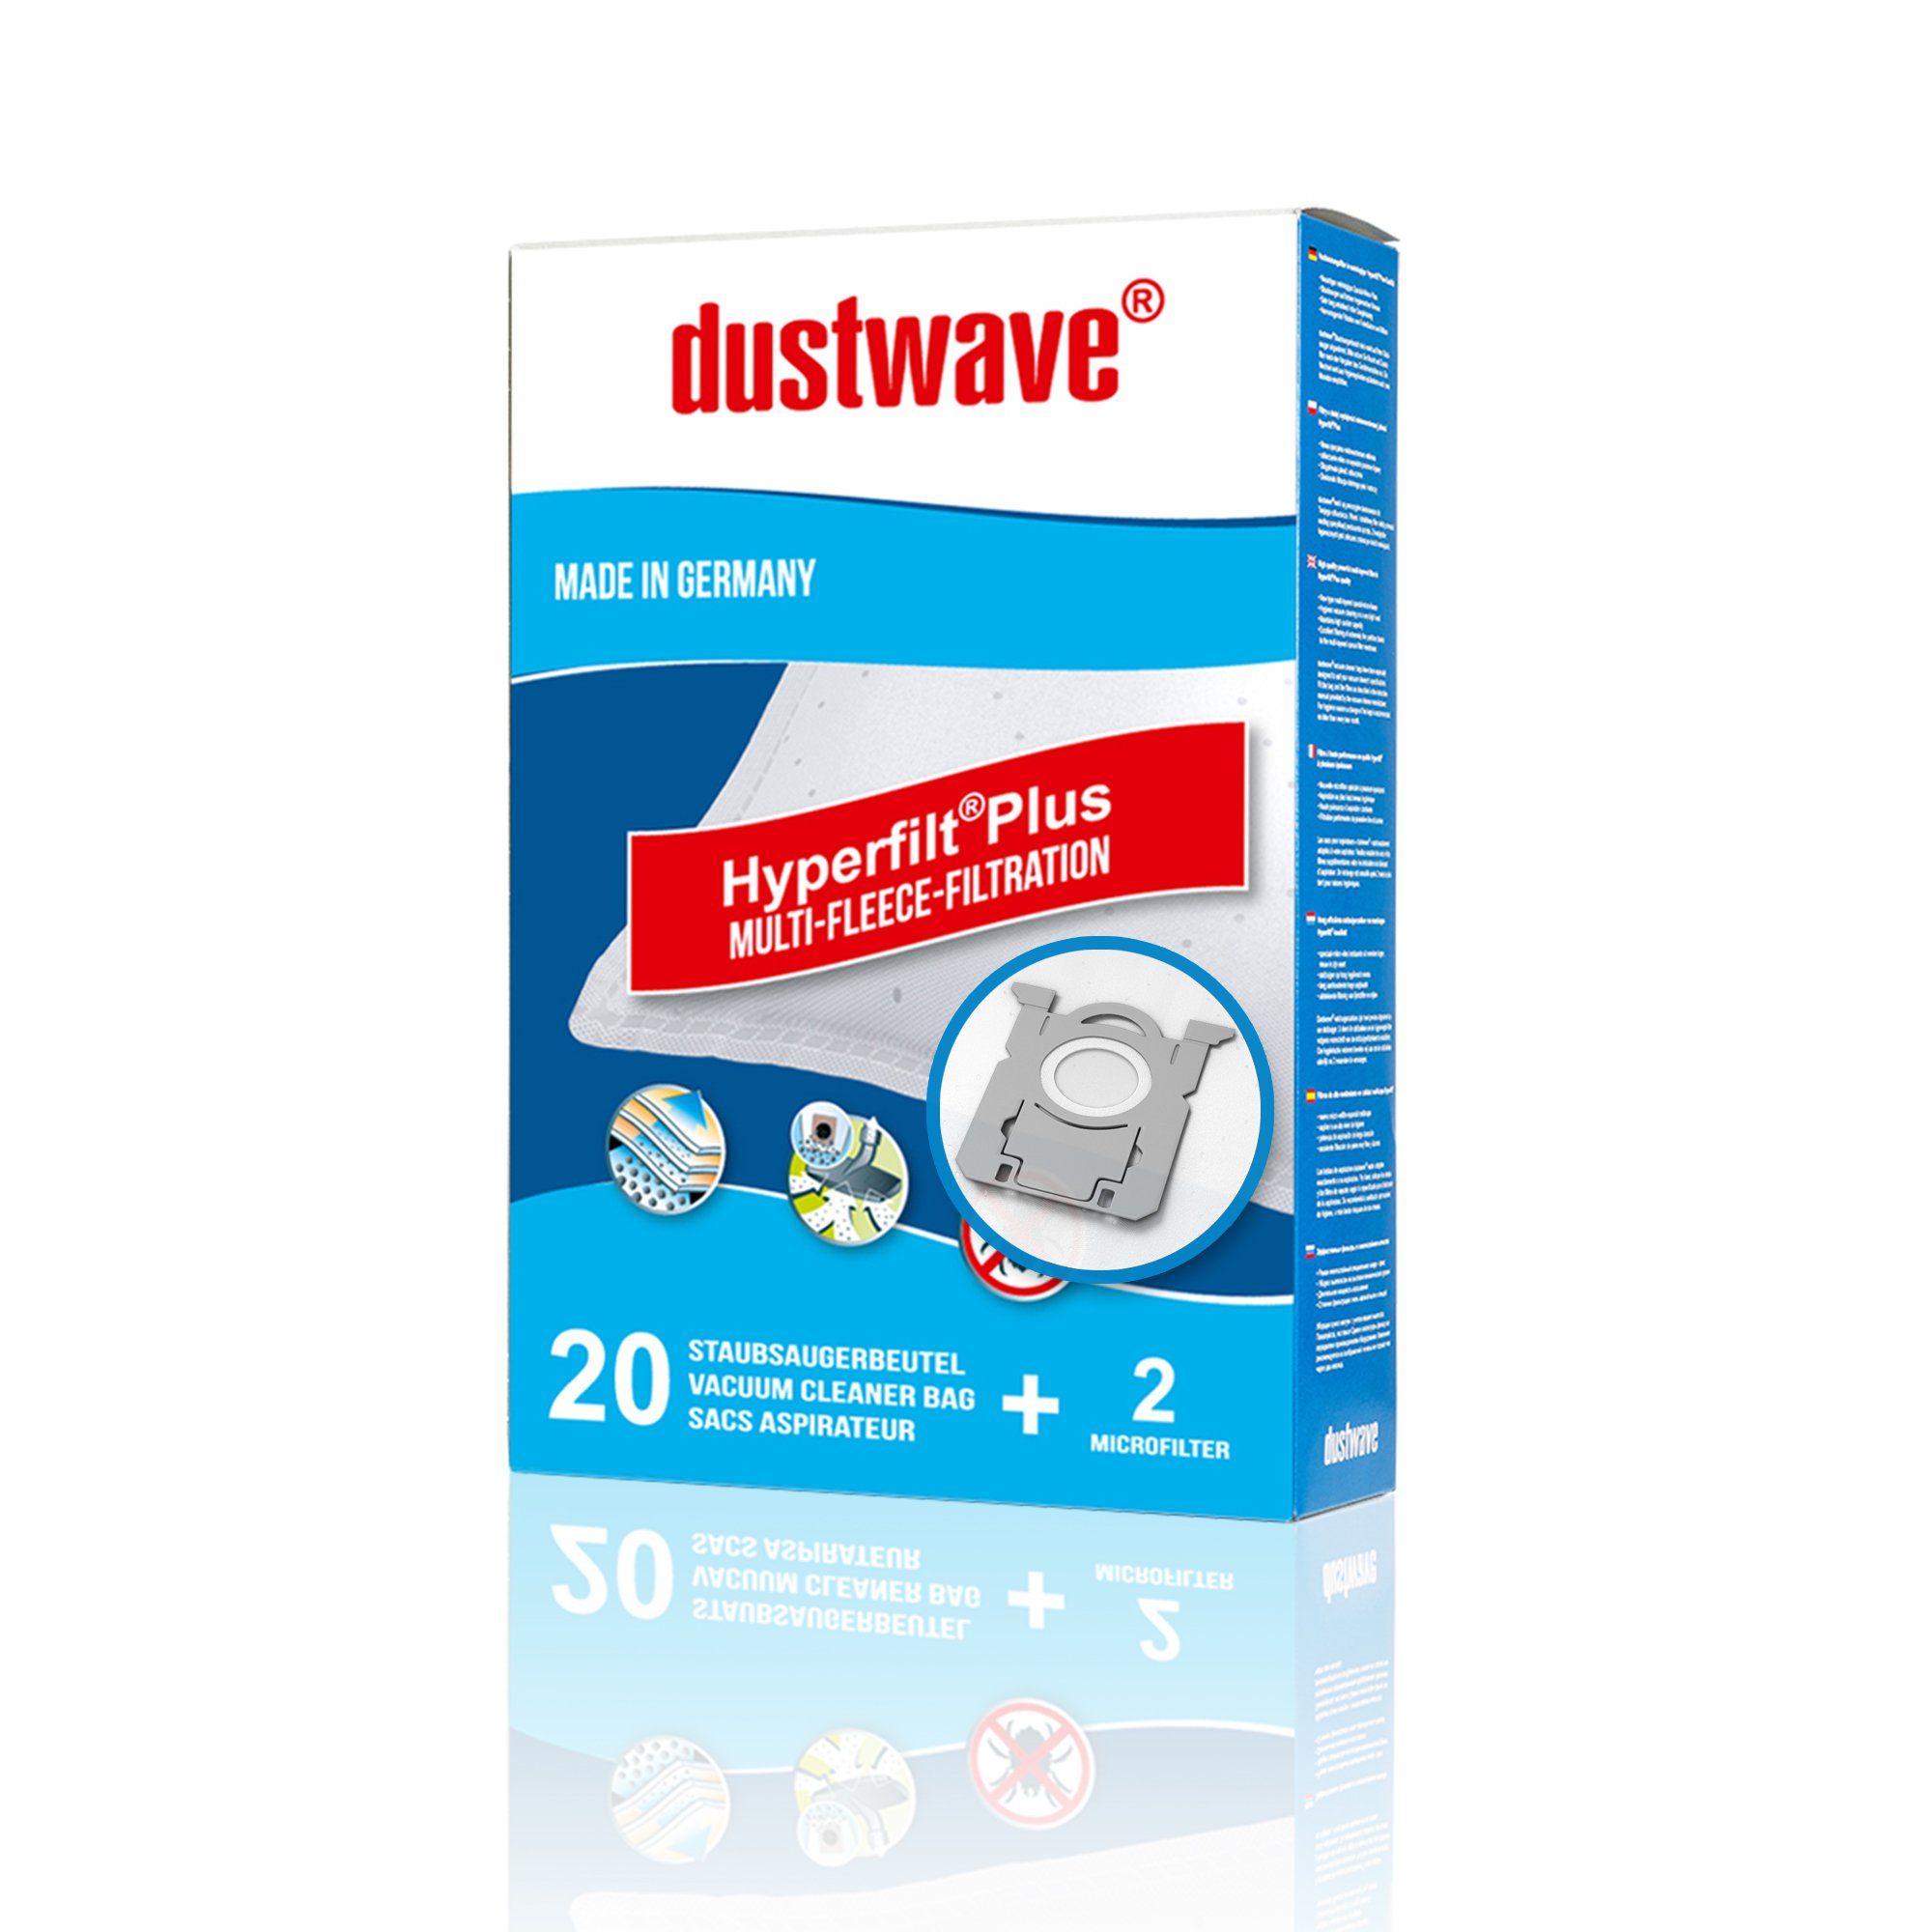 Dustwave Staubsaugerbeutel Test-Set, passend für Aldi UN 210/UN210, 1 St.,  Test-Set, 1 Staubsaugerbeutel + 1 Hepa-Filter (ca. 15x15cm - zuschneidbar)